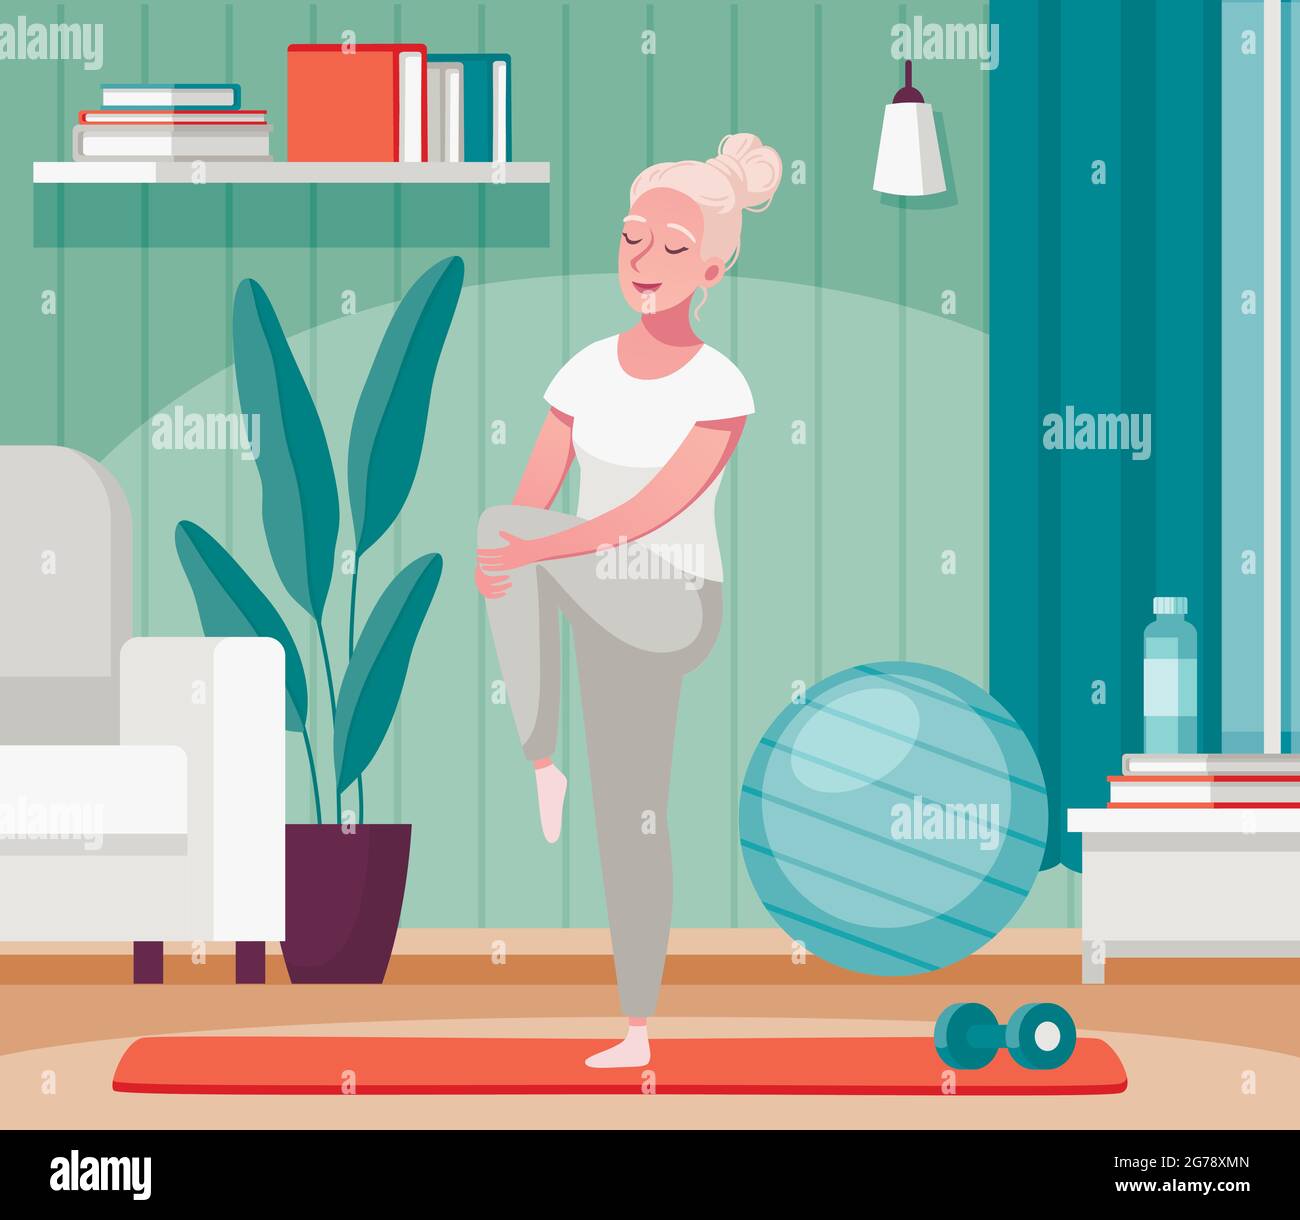 Ältere ältere Menschen Home-Aktivitäten Cartoon-Komposition mit alten Dame Strecken Beine auf Fitness-Matte Vektor-Illustration Stock Vektor